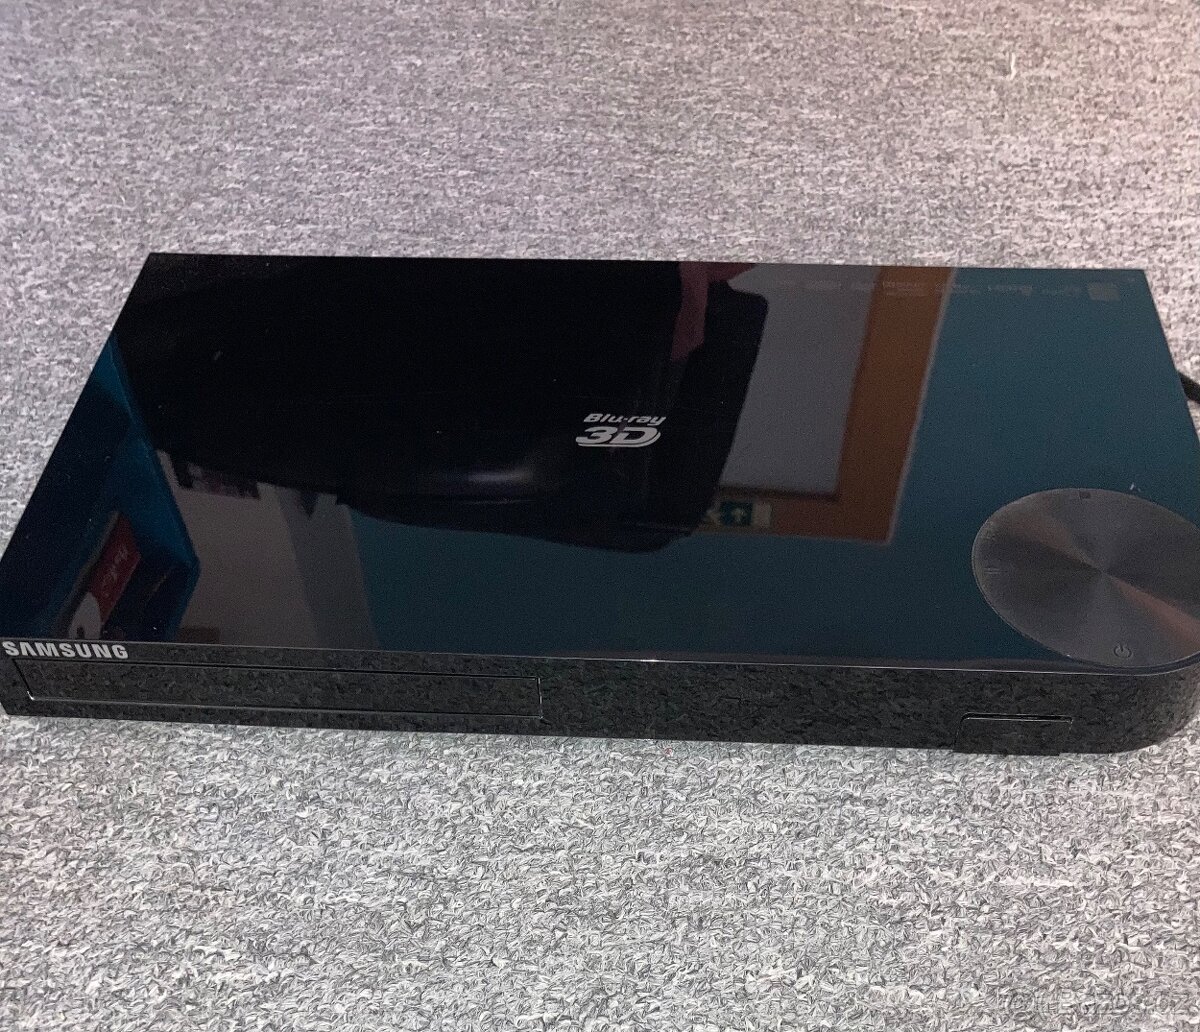 Samsung Blu-Ray přehrávač BD-F5500